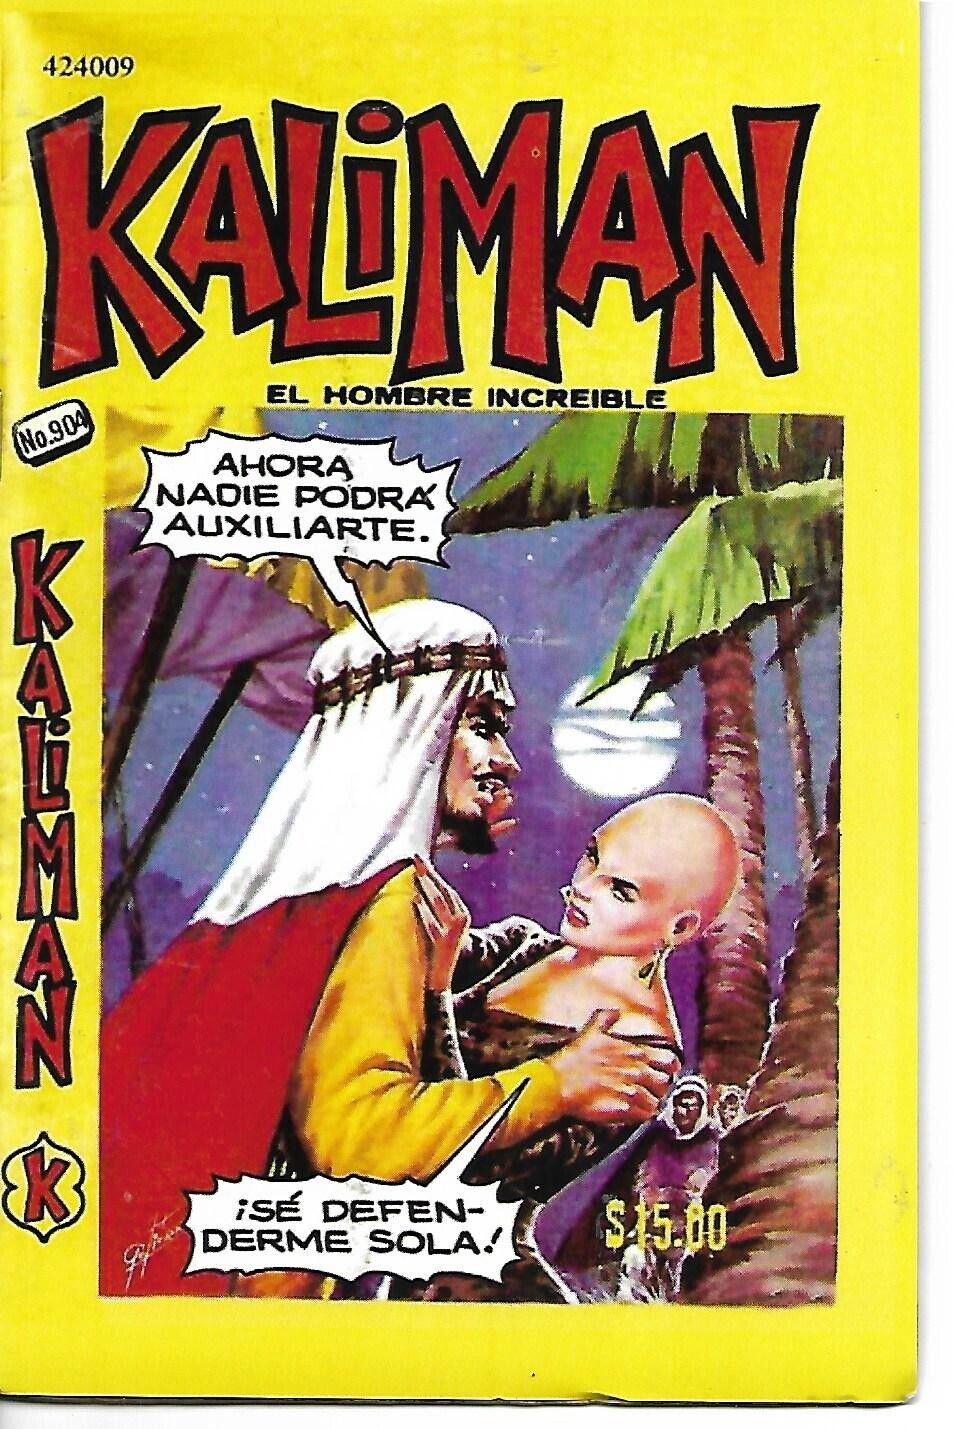 Kaliman El Hombre Increible #904 - Marzo 25, 1983 - Mexico